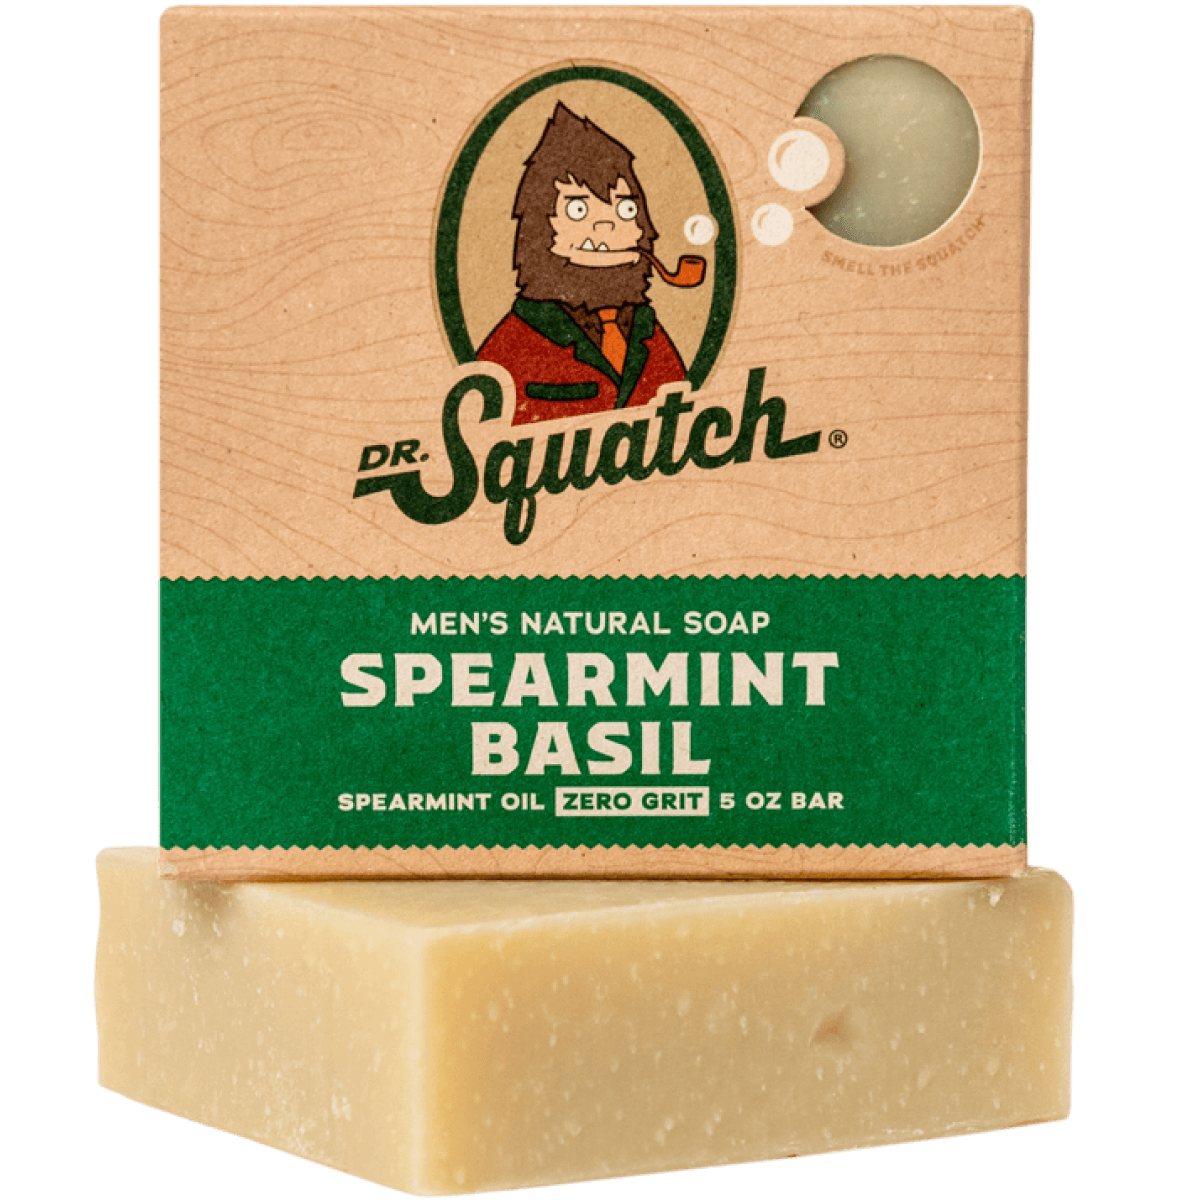 Dr. Squatch Men's Natural Soap Spearmint Basil 5oz Bar